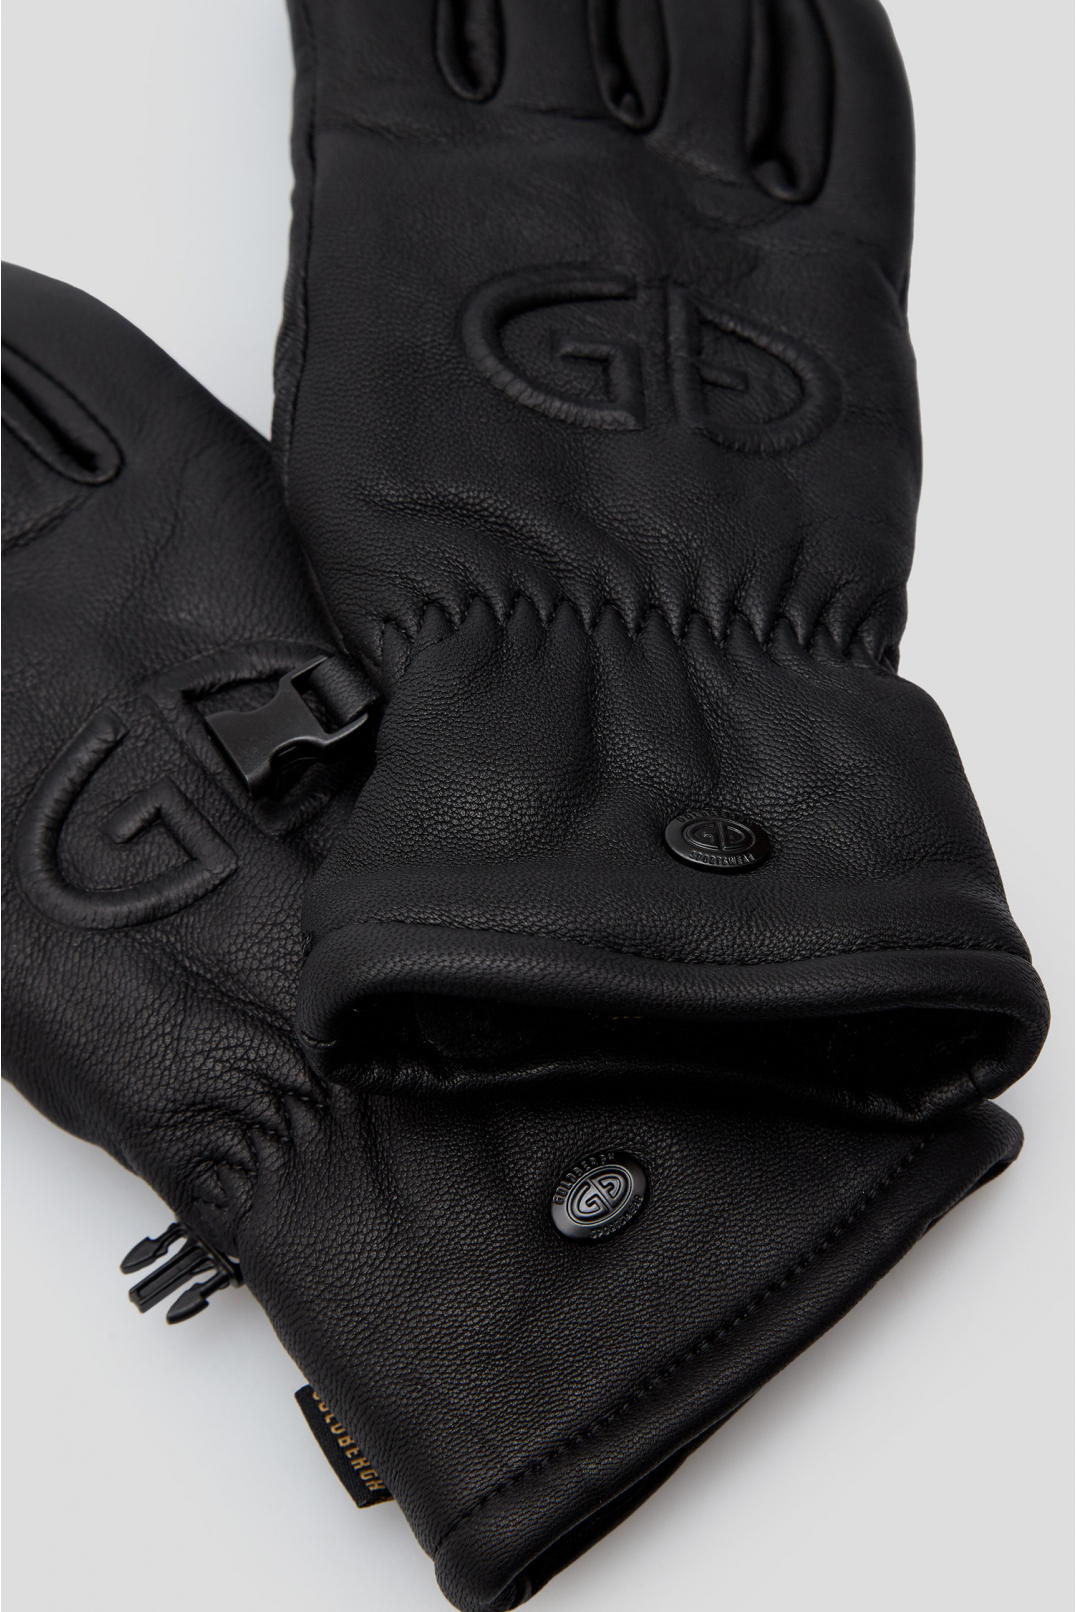 Жіночі чорні шкіряні лижні рукавички  - 3